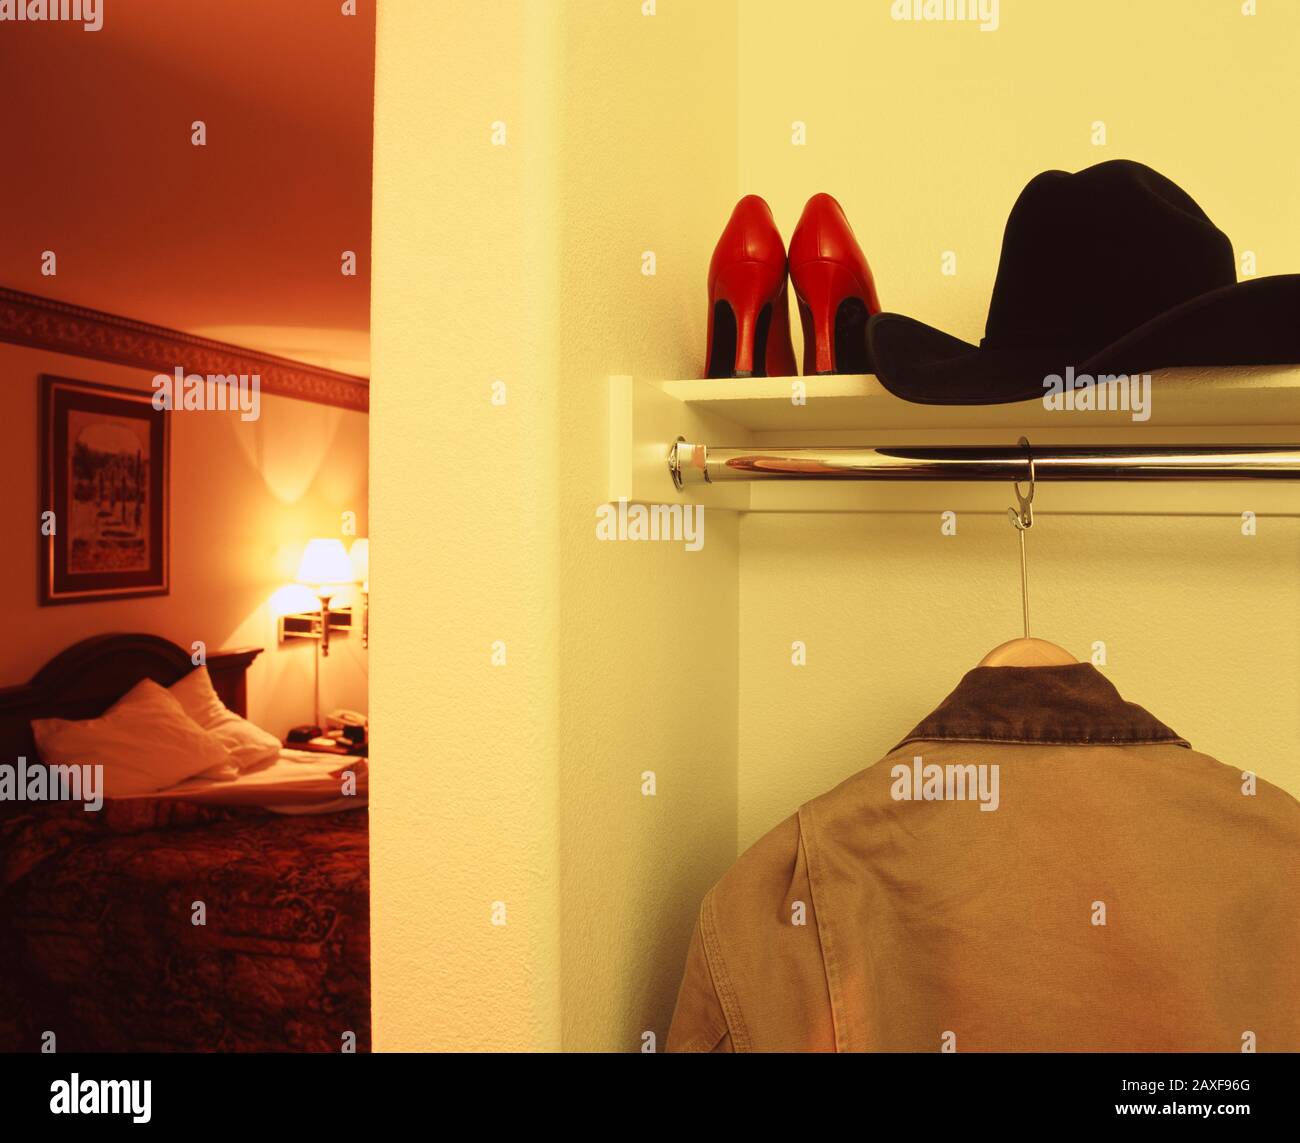 Nahaufnahme einer Jacke und eines Cowboyhuts mit einem Paar Schuhen mit hohem Absatz in einem Regal eines Motelzimmers, Kalifornien, USA Stockfoto